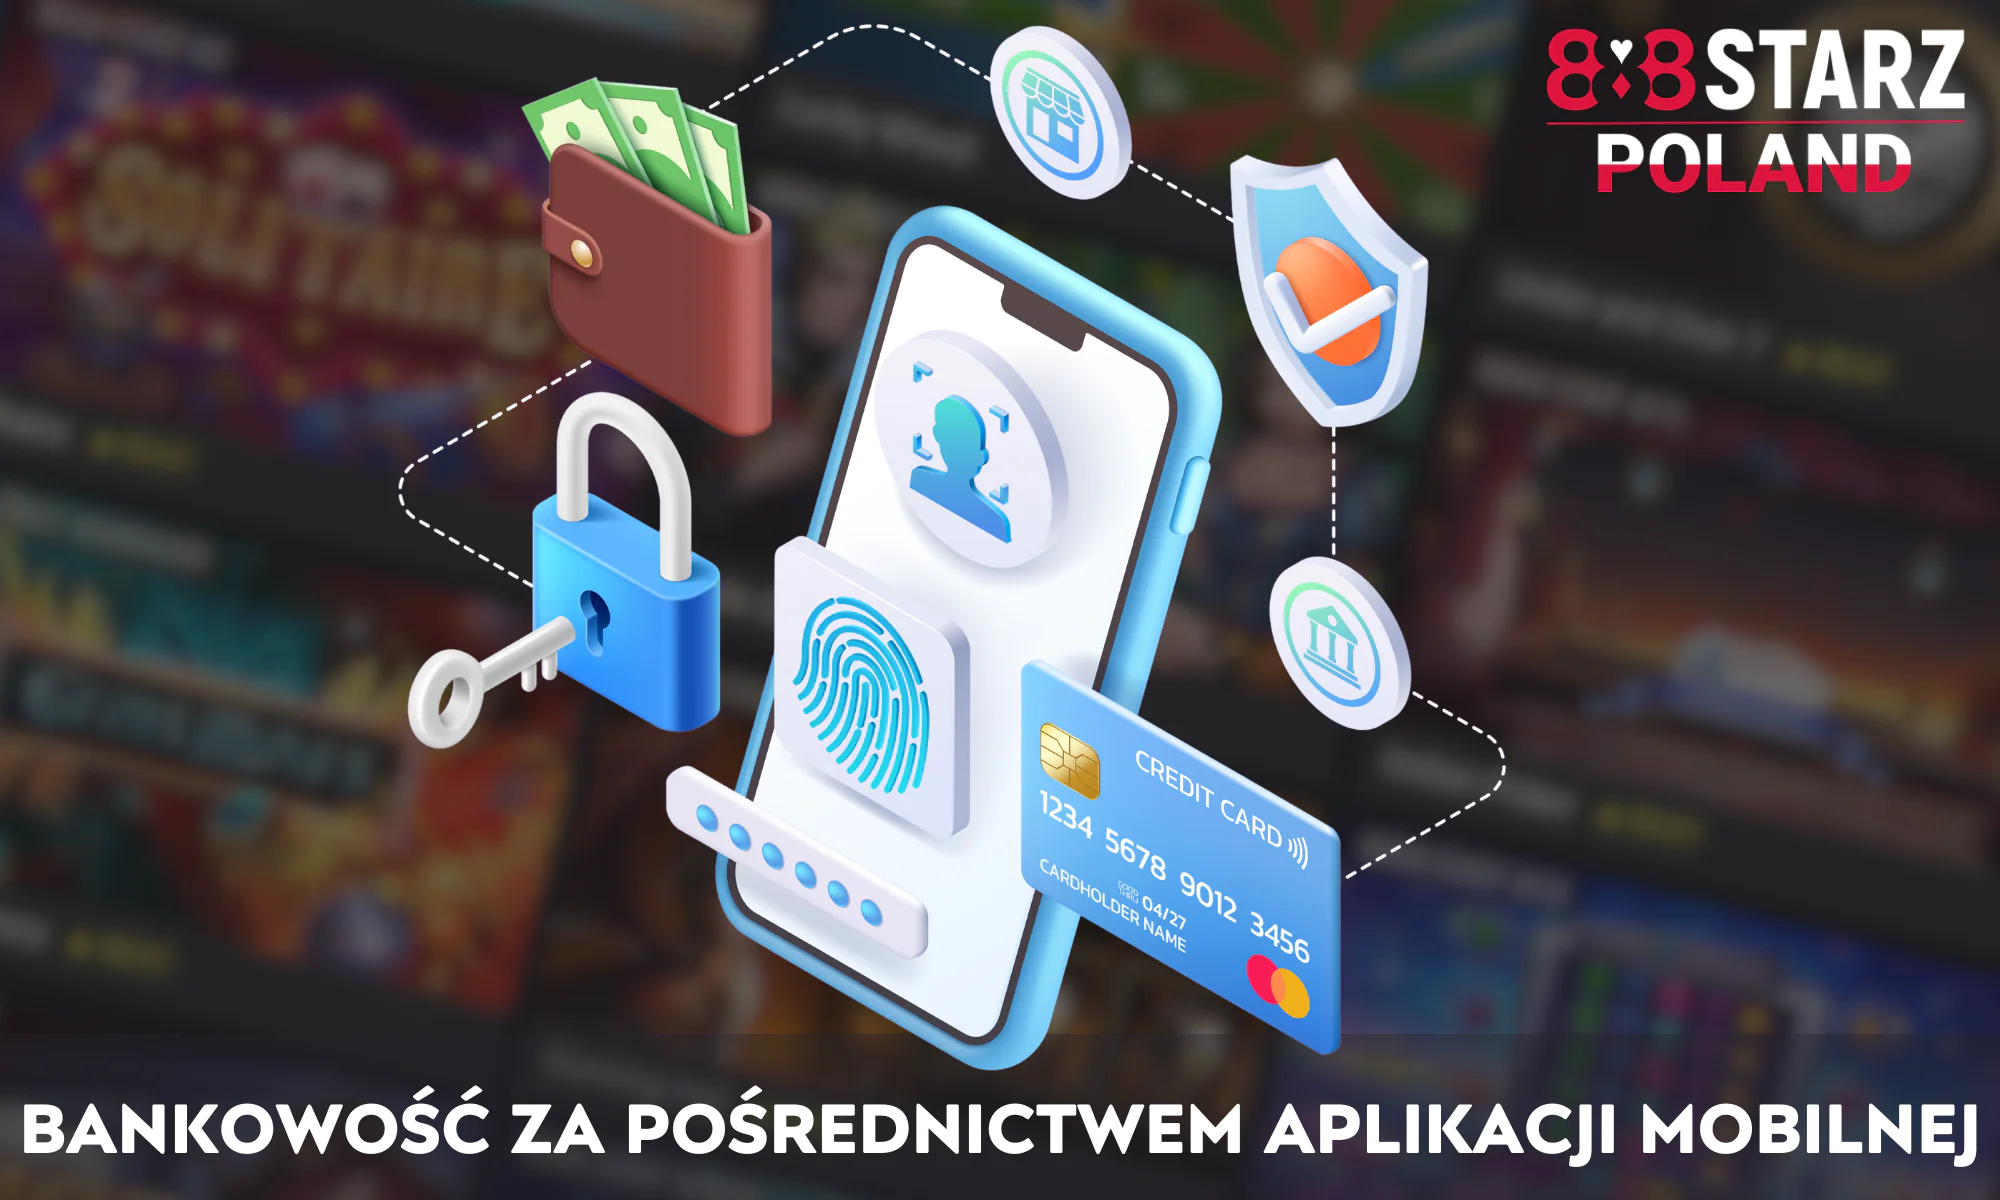 Korzystając z aplikacji mobilnej 888Starz, użytkownicy w Polsce mogą wpłacać lub wypłacać środki w lokalnej walucie